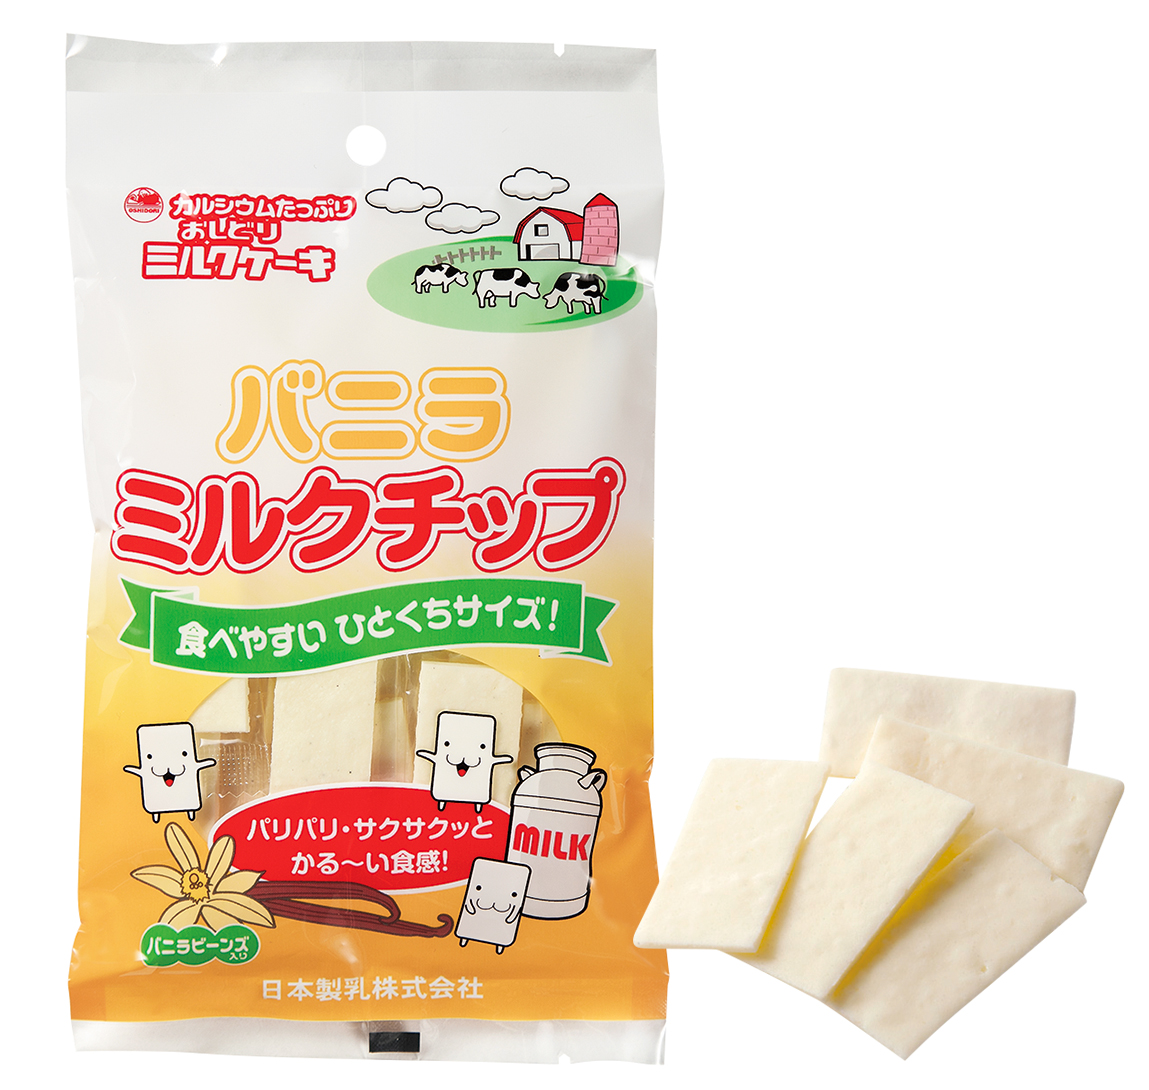 バニラミルクチップ終売のご案内 | 日本製乳株式会社